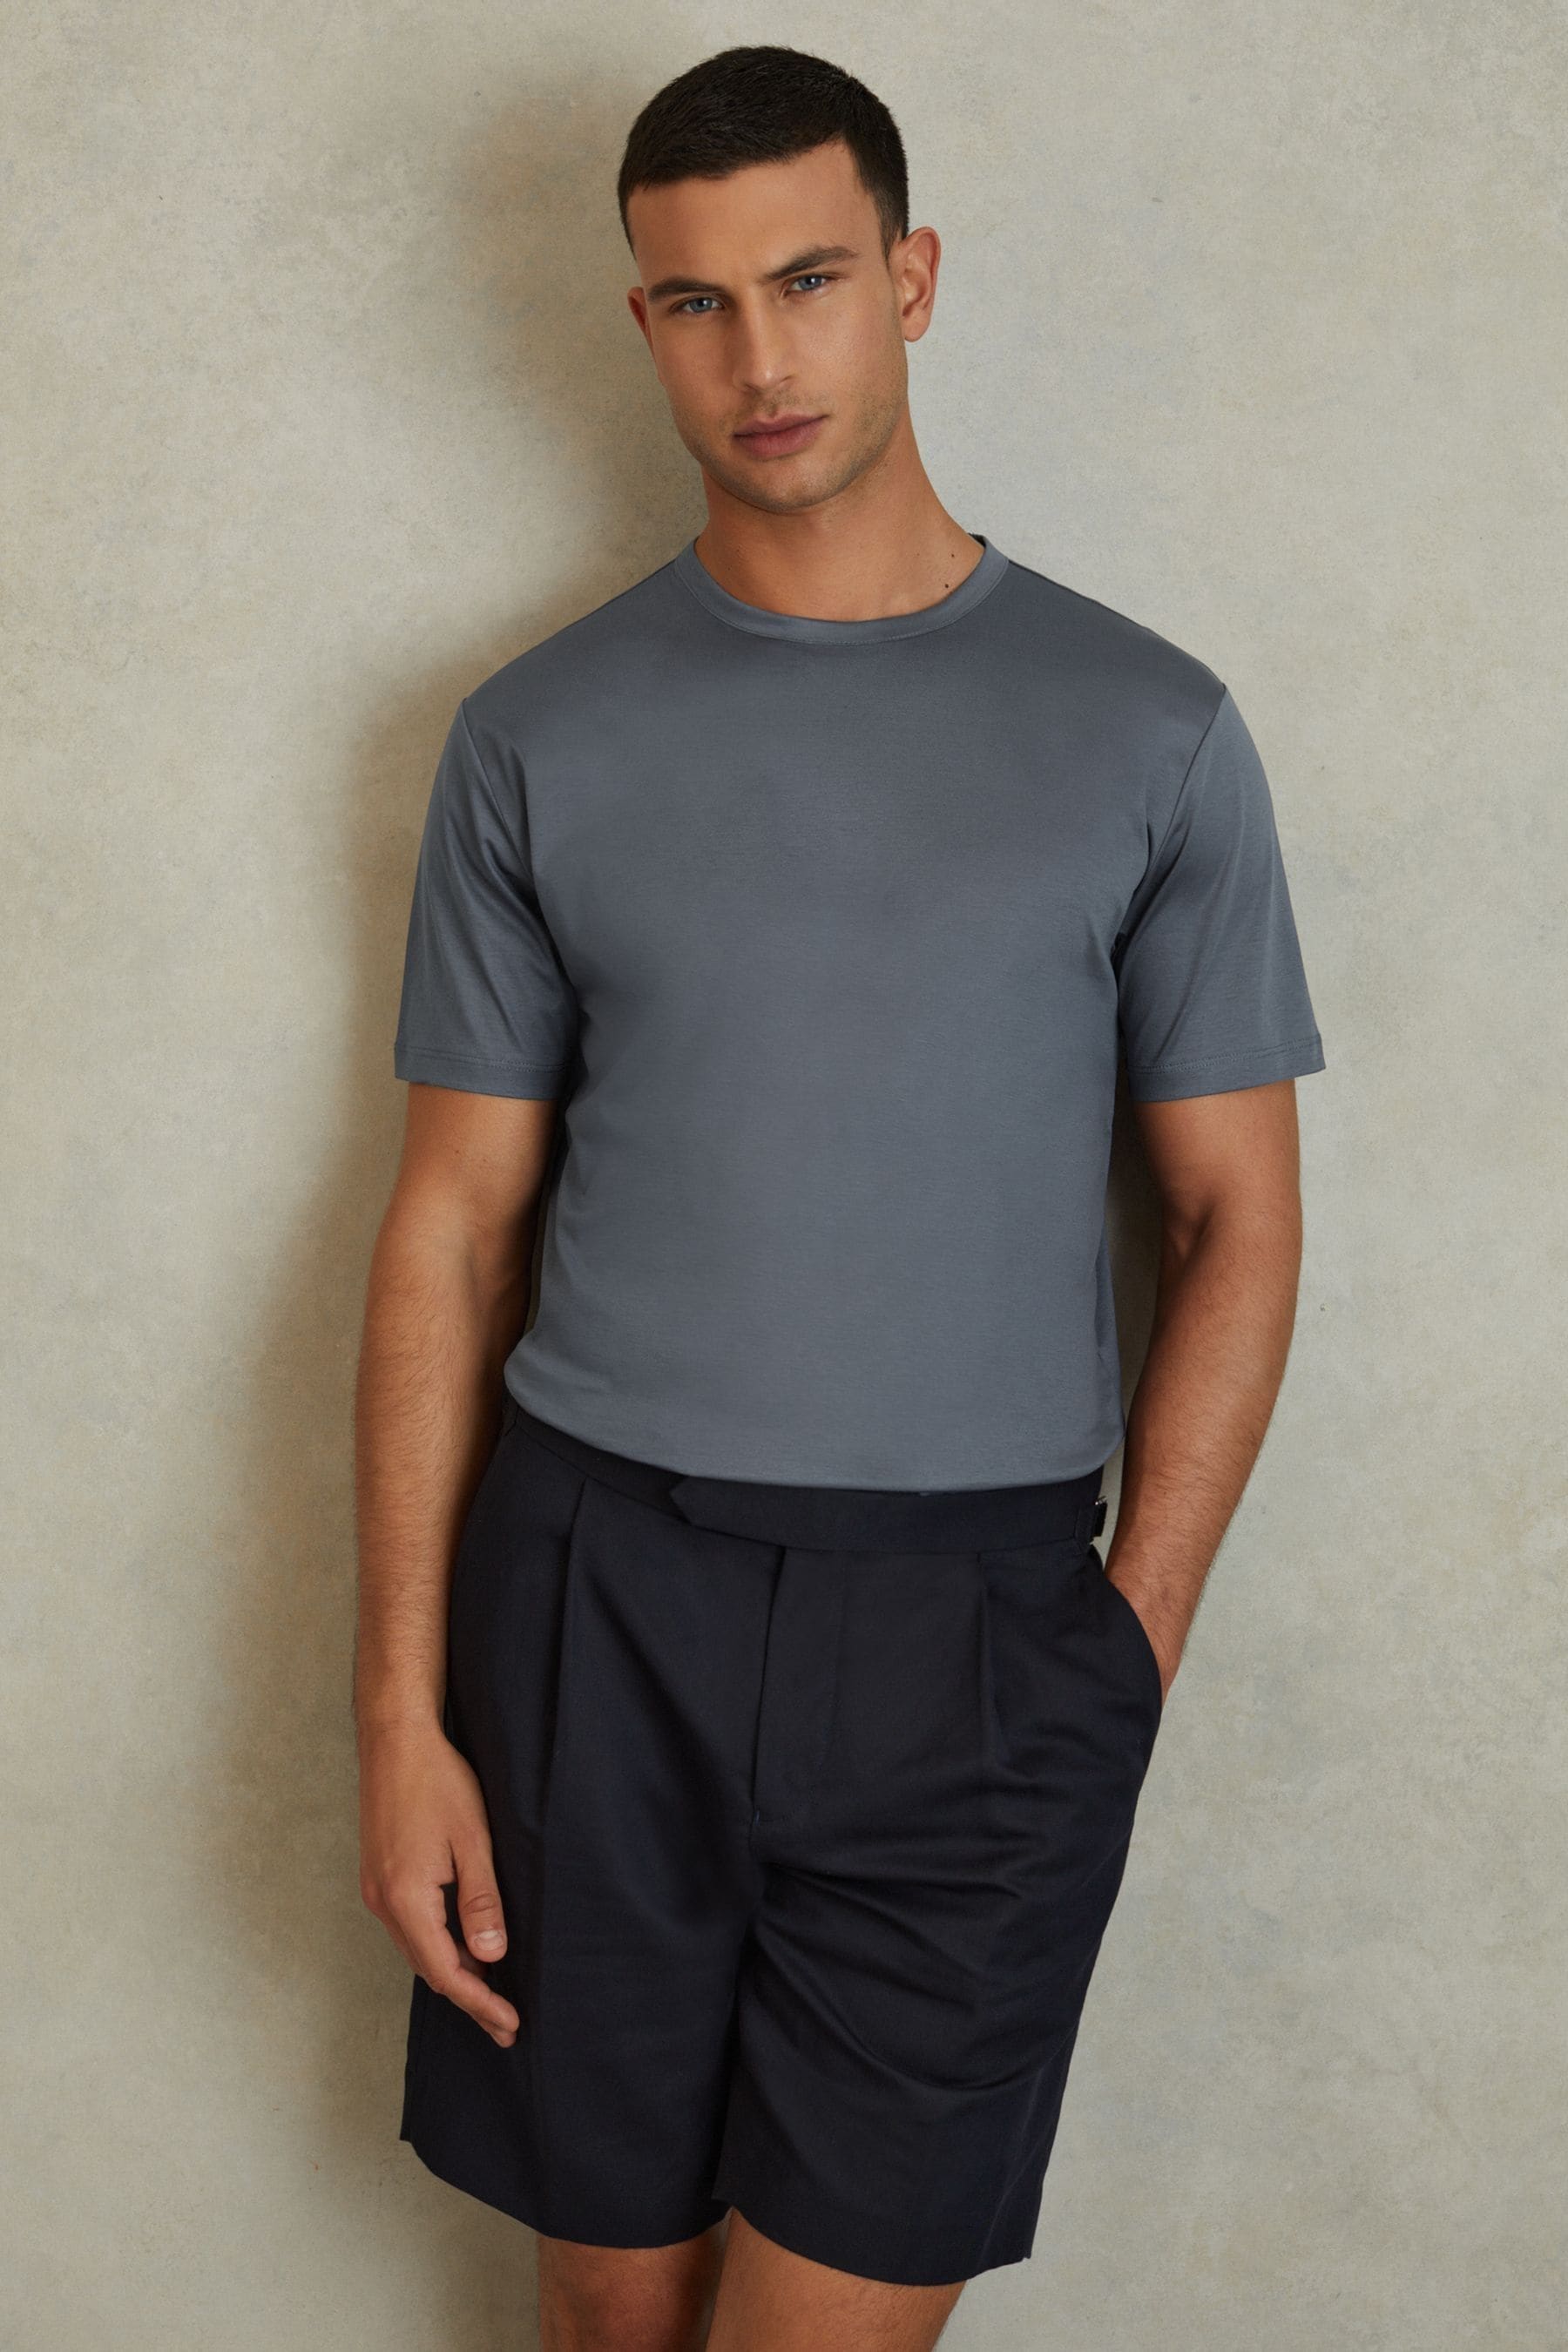 Reiss Capri - Airforce Blue Cotton Crew Neck T-shirt, L